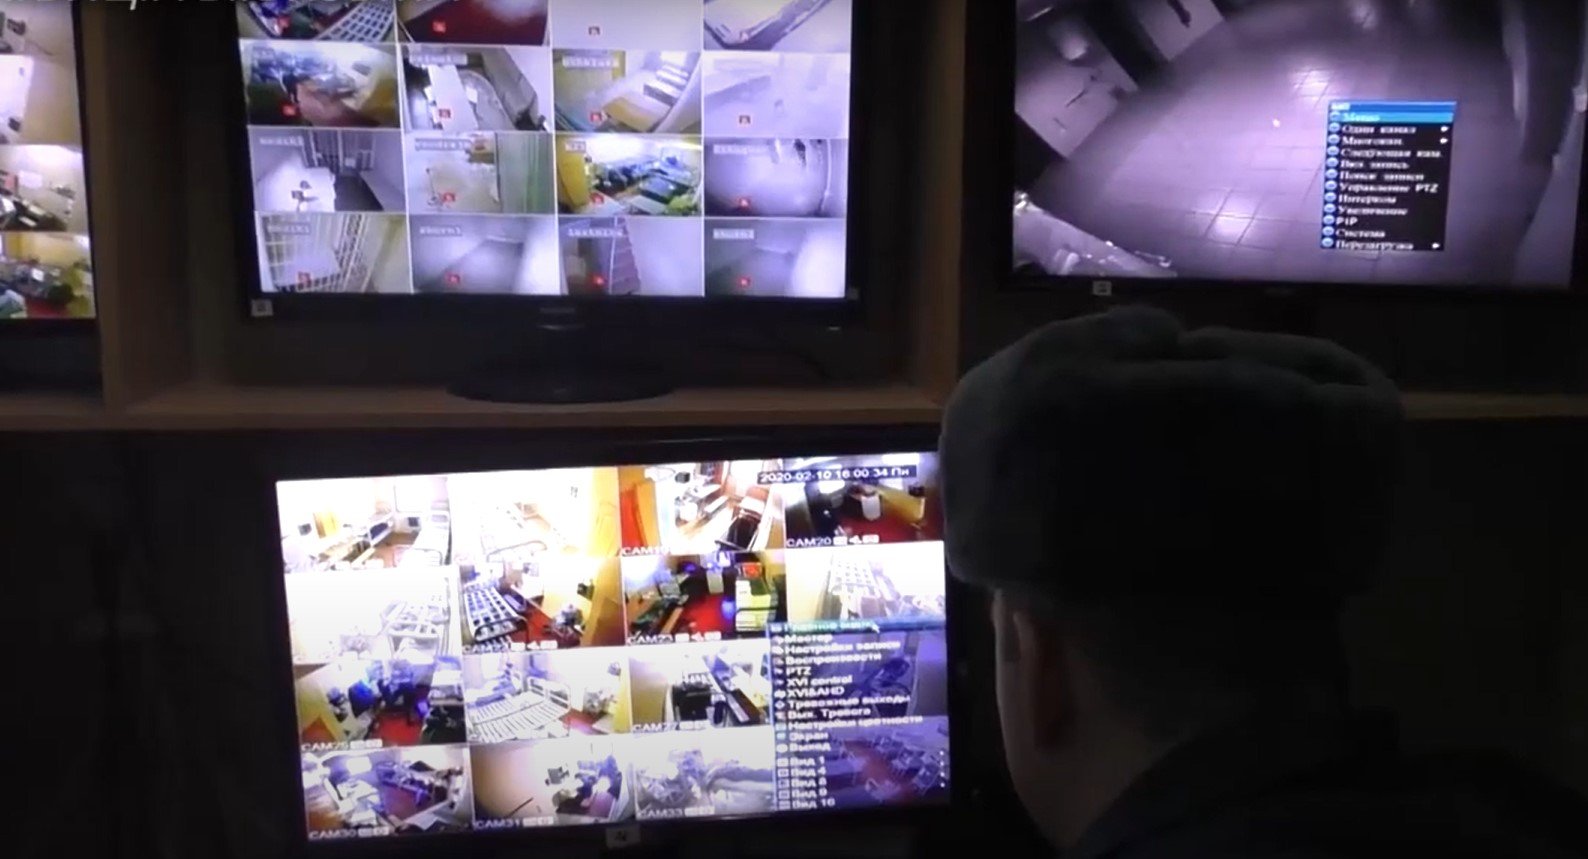 Наглядач у Вяземському СІЗО спостерігає через камери спостереження за в’язнями. Скриншот із відео Вяземського інформаційного центру, підготовленого до святкування з нагоди 85-річчя СІЗО у 2020 році